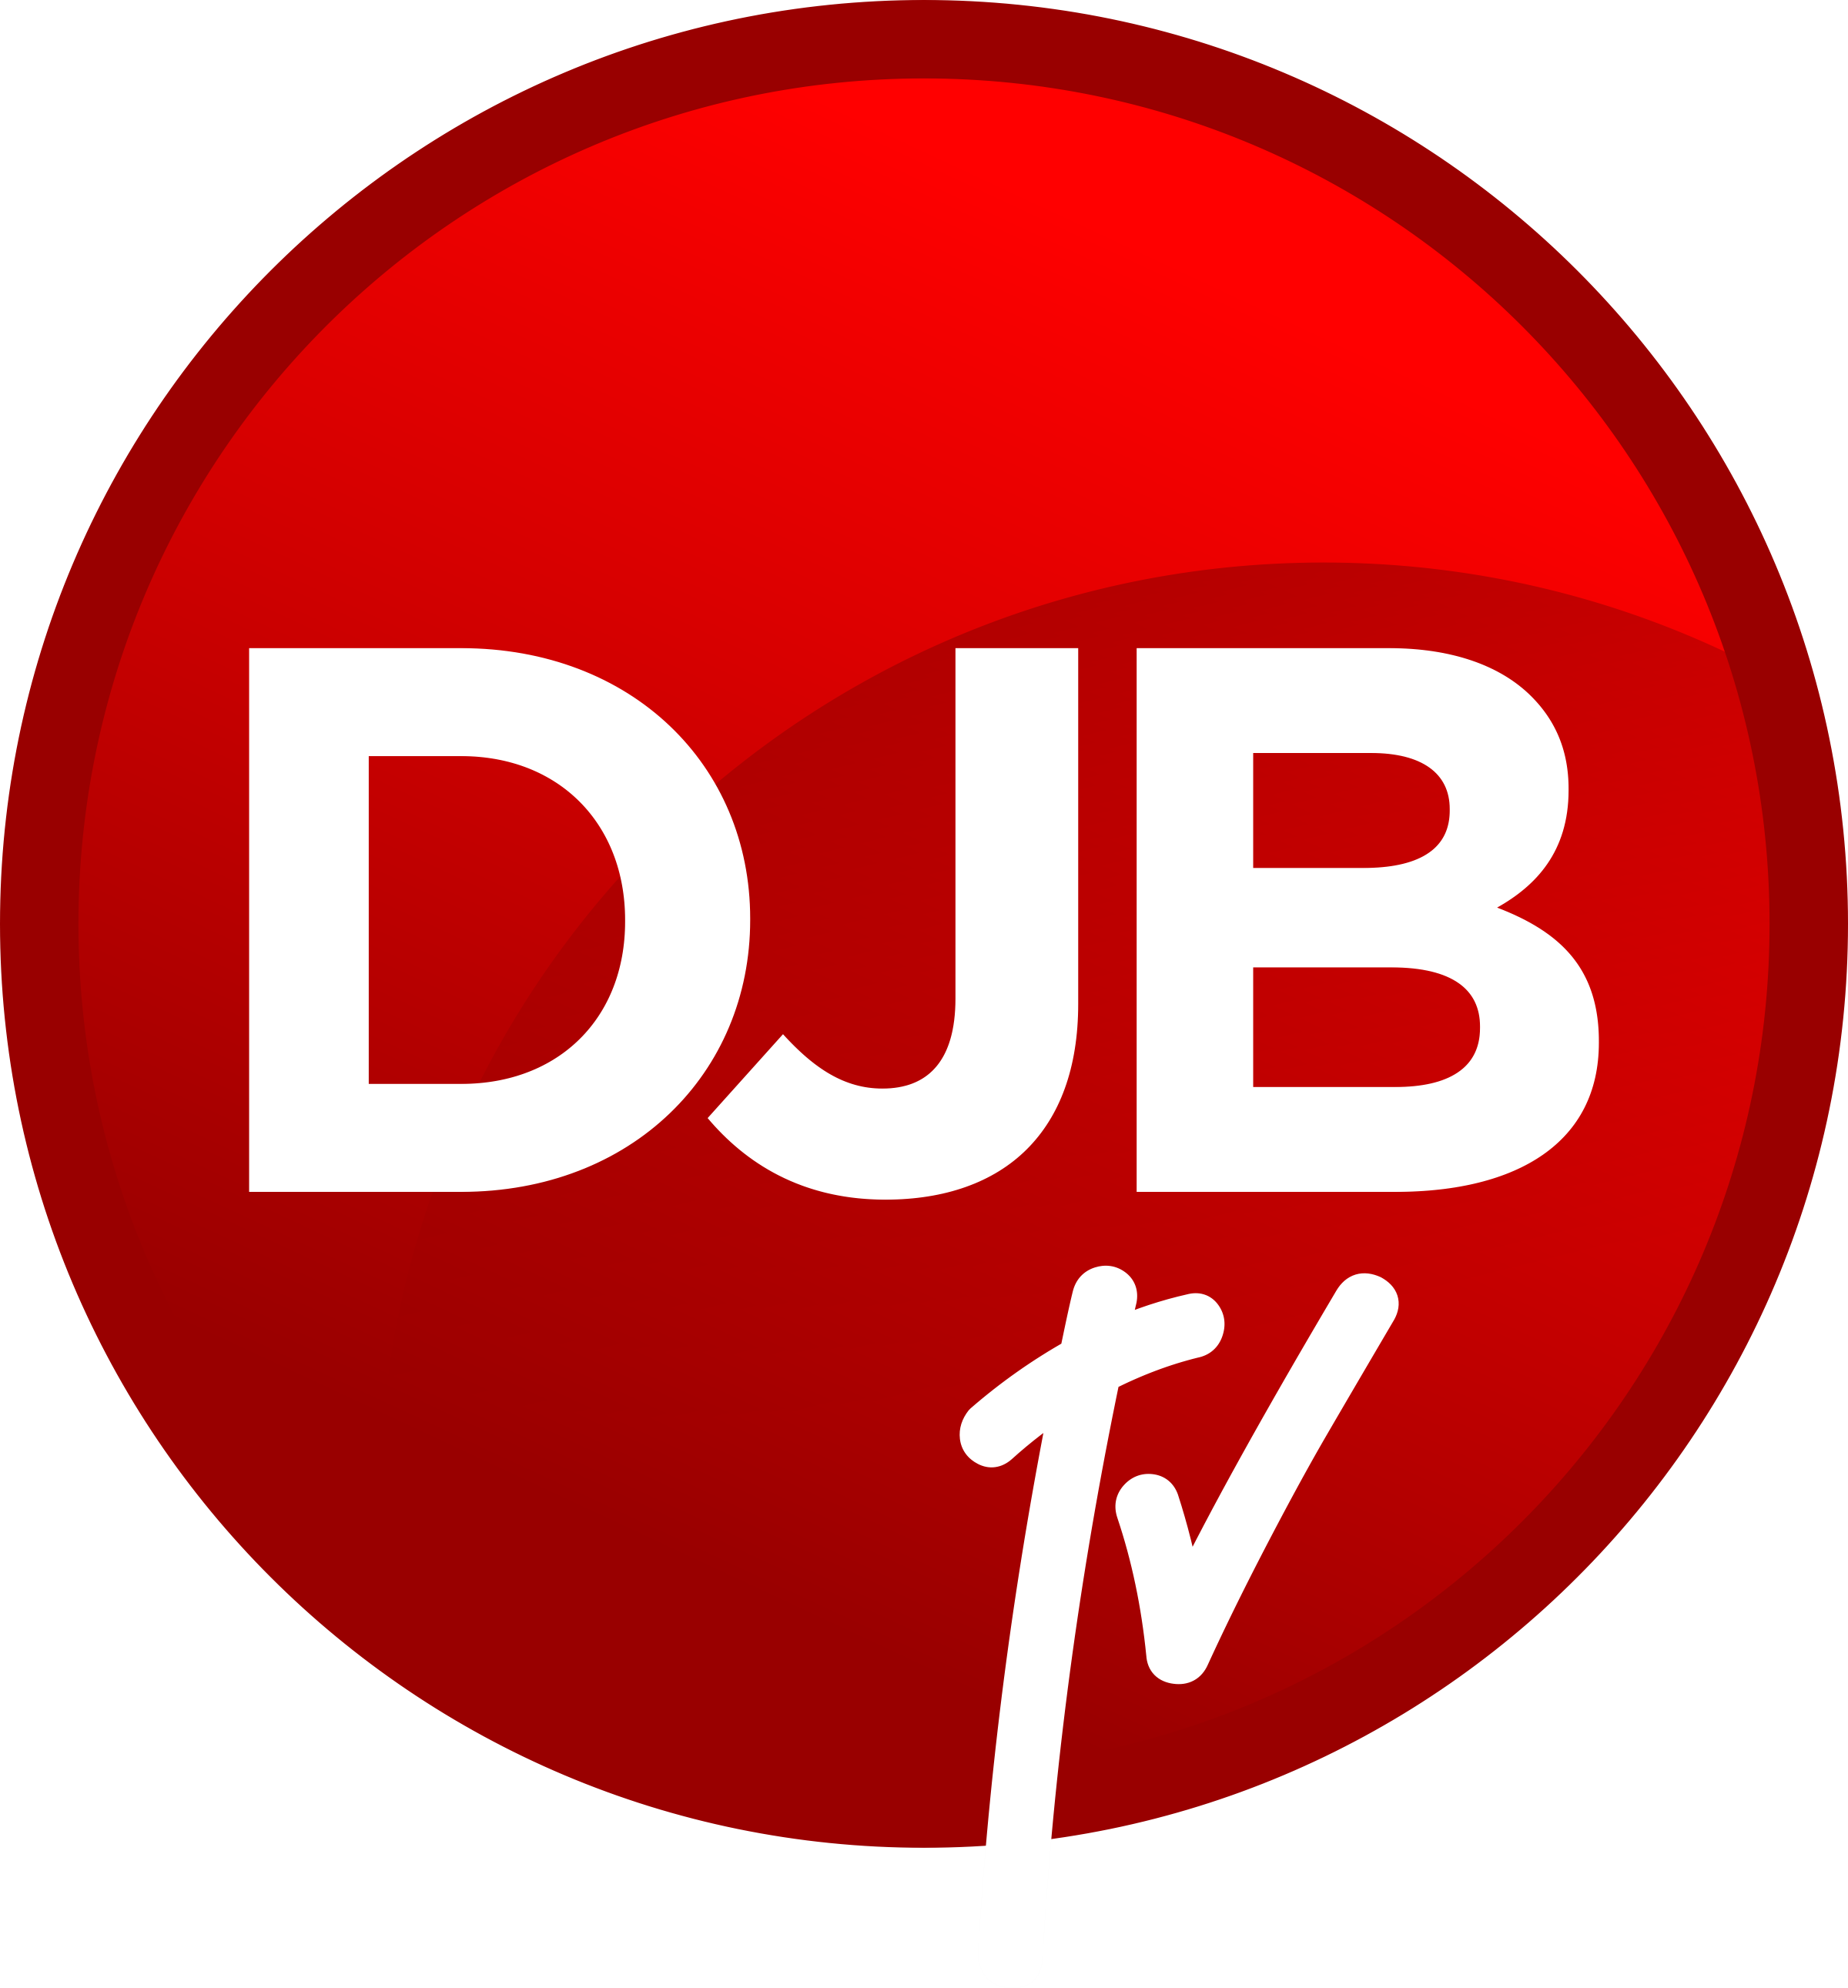 DJBTV – DatJoblessBoi TV